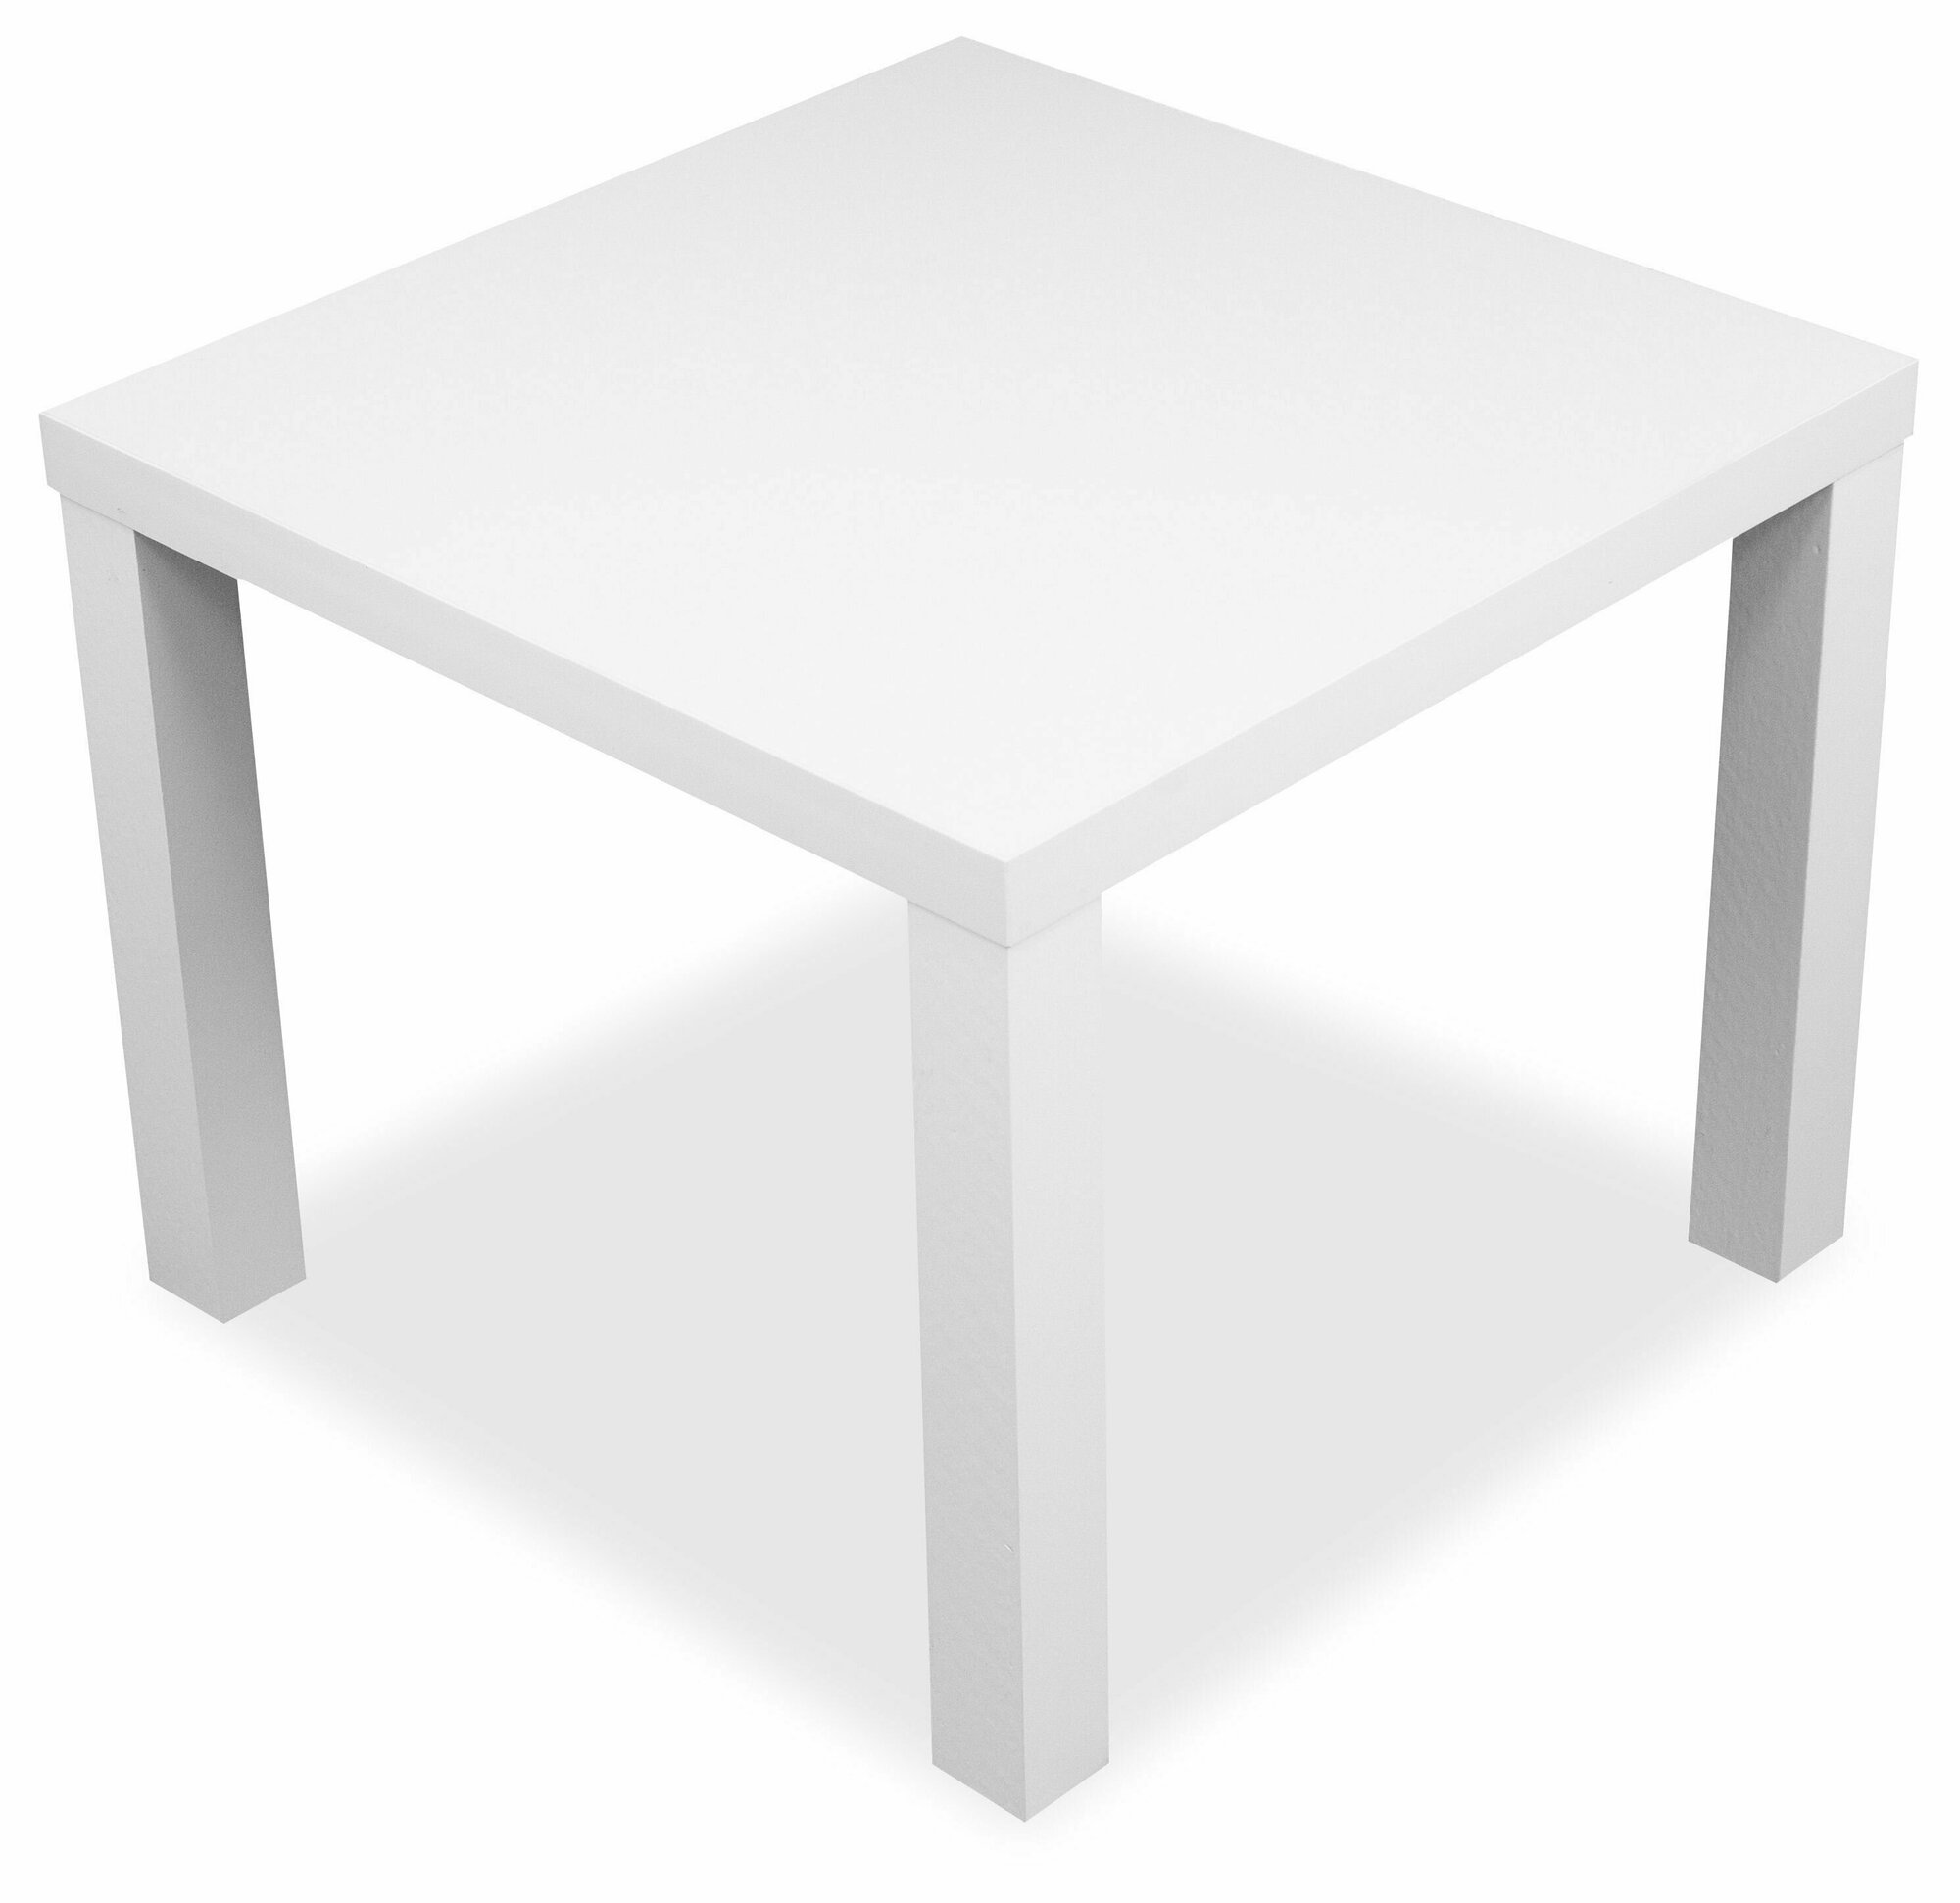 Уценка Столик журнальный квадратный Hesby Elegant Simplicity для дома и офиса. Размер: 55х55х42см. Цвет: белый (У2044)